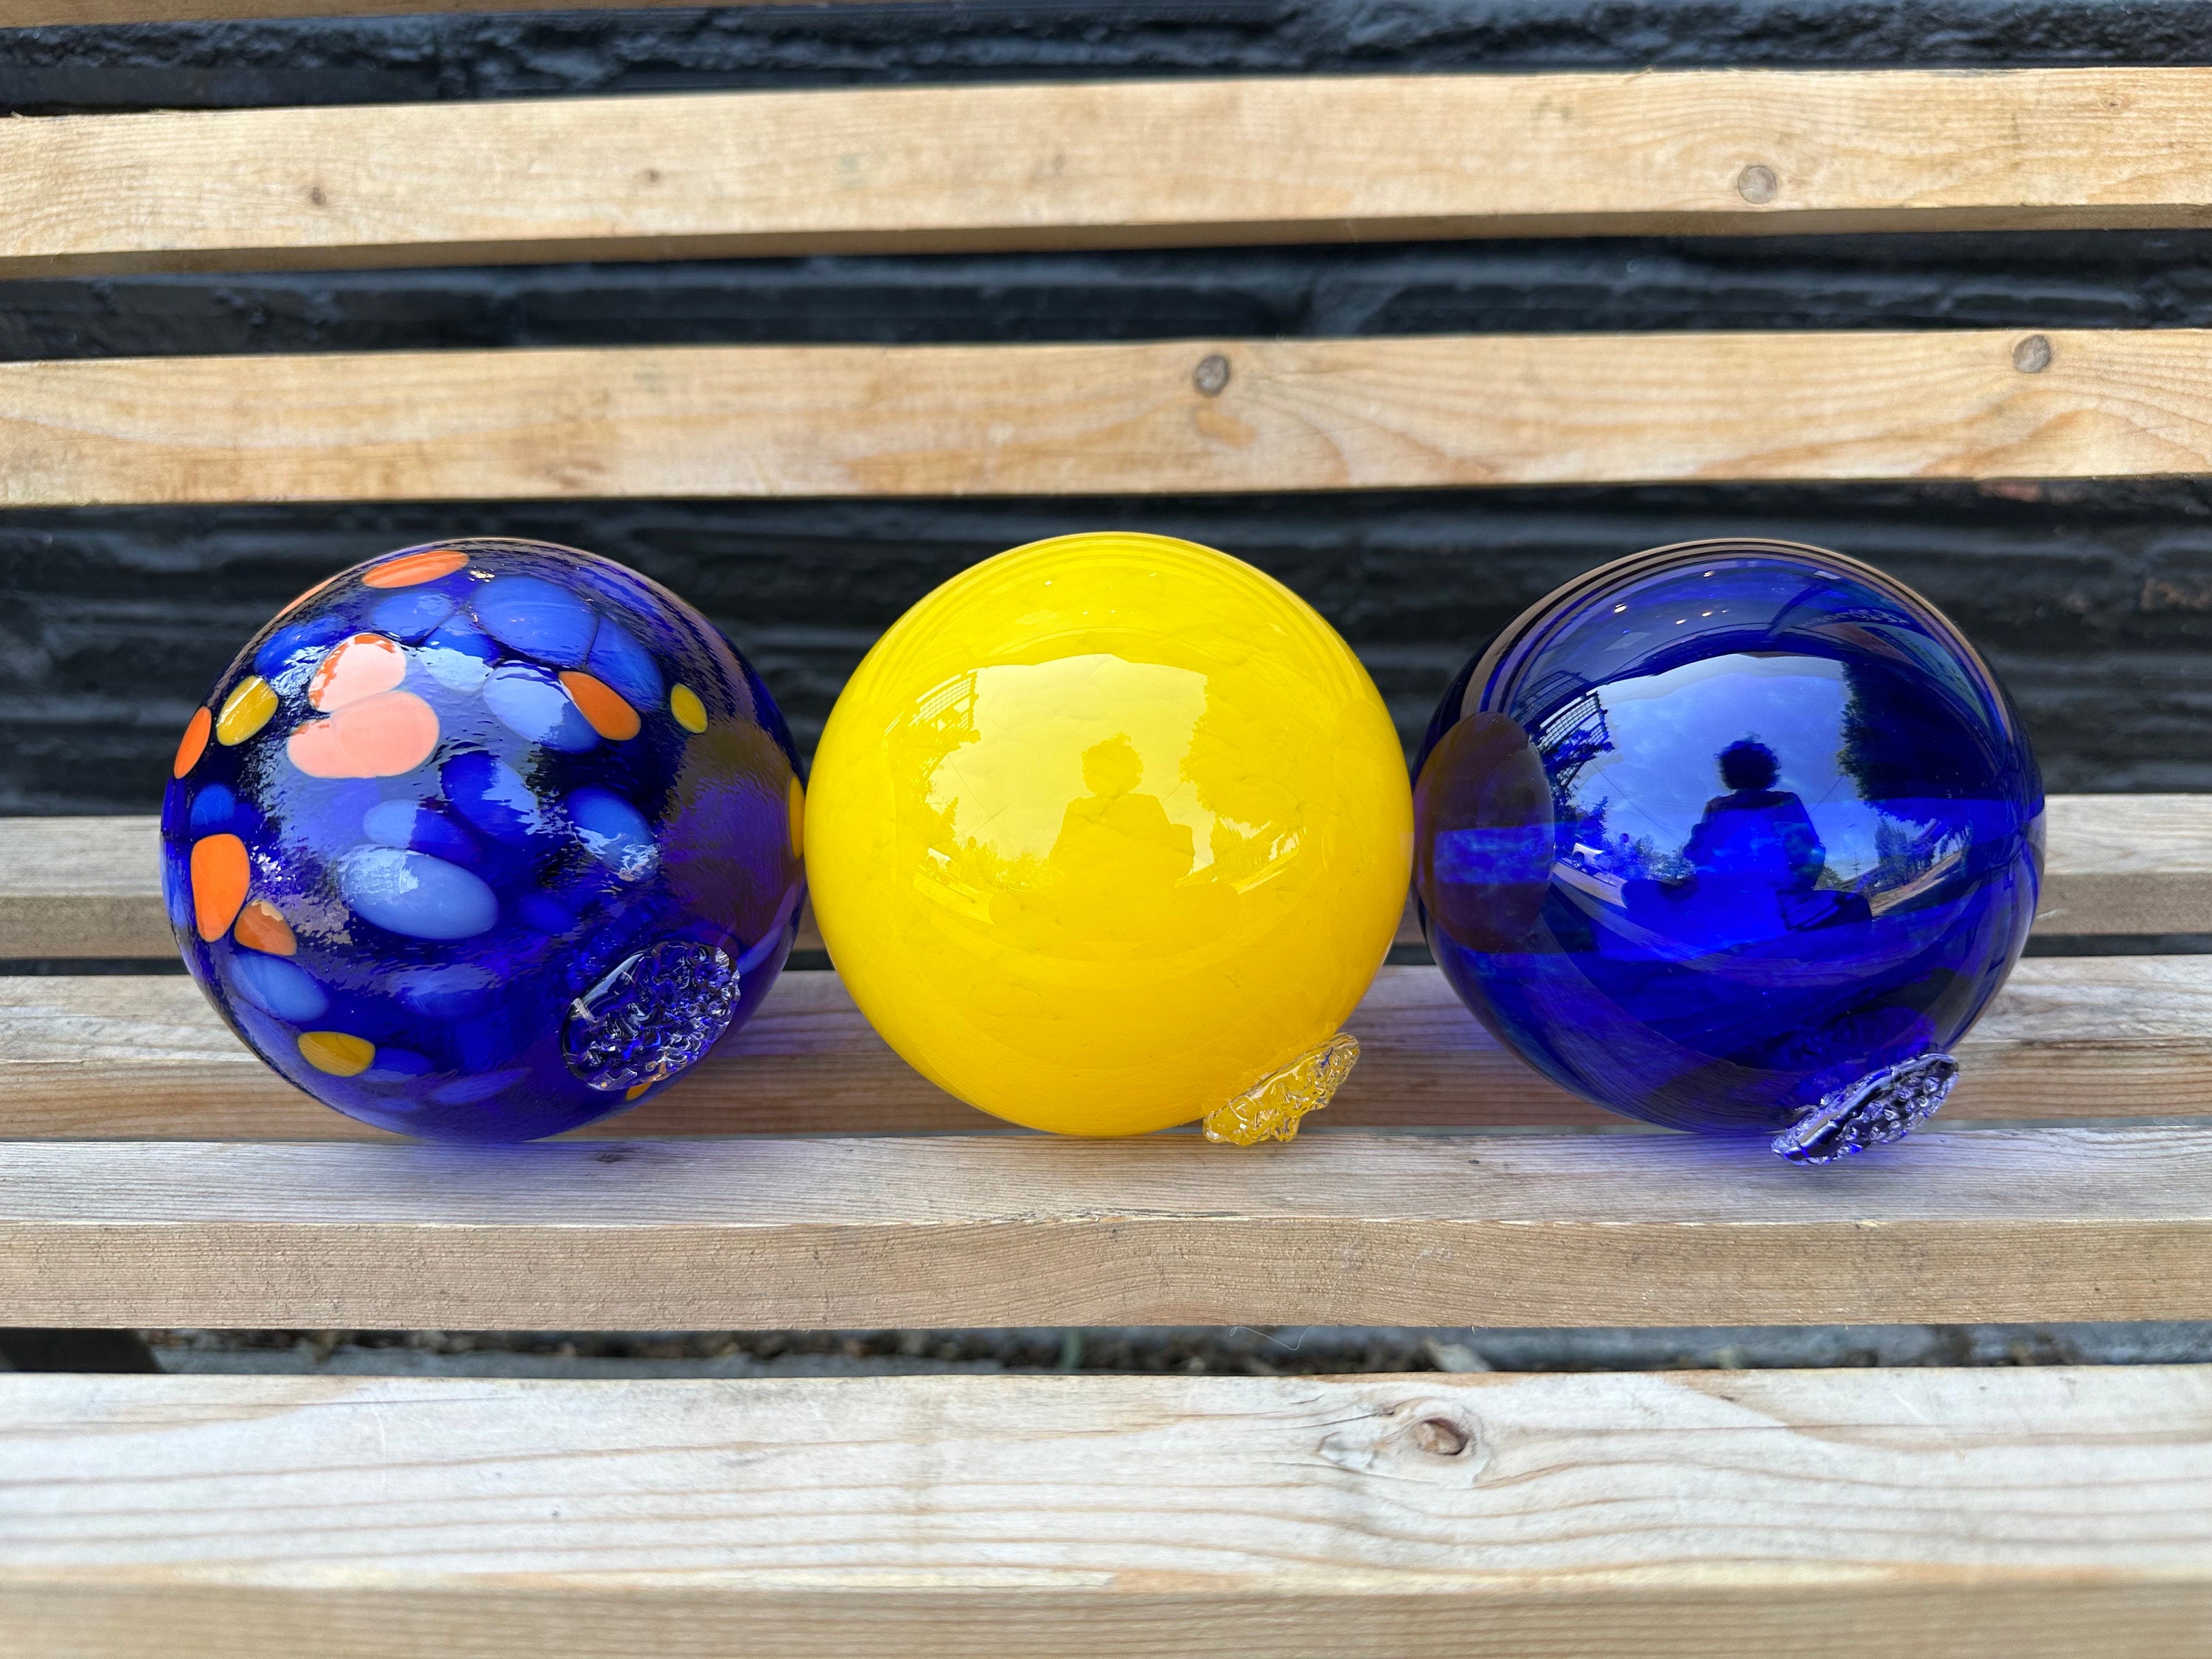 Blue & Yellow Floats, Set of 3 Hand Blown Glass Gaze Balls, 4.25